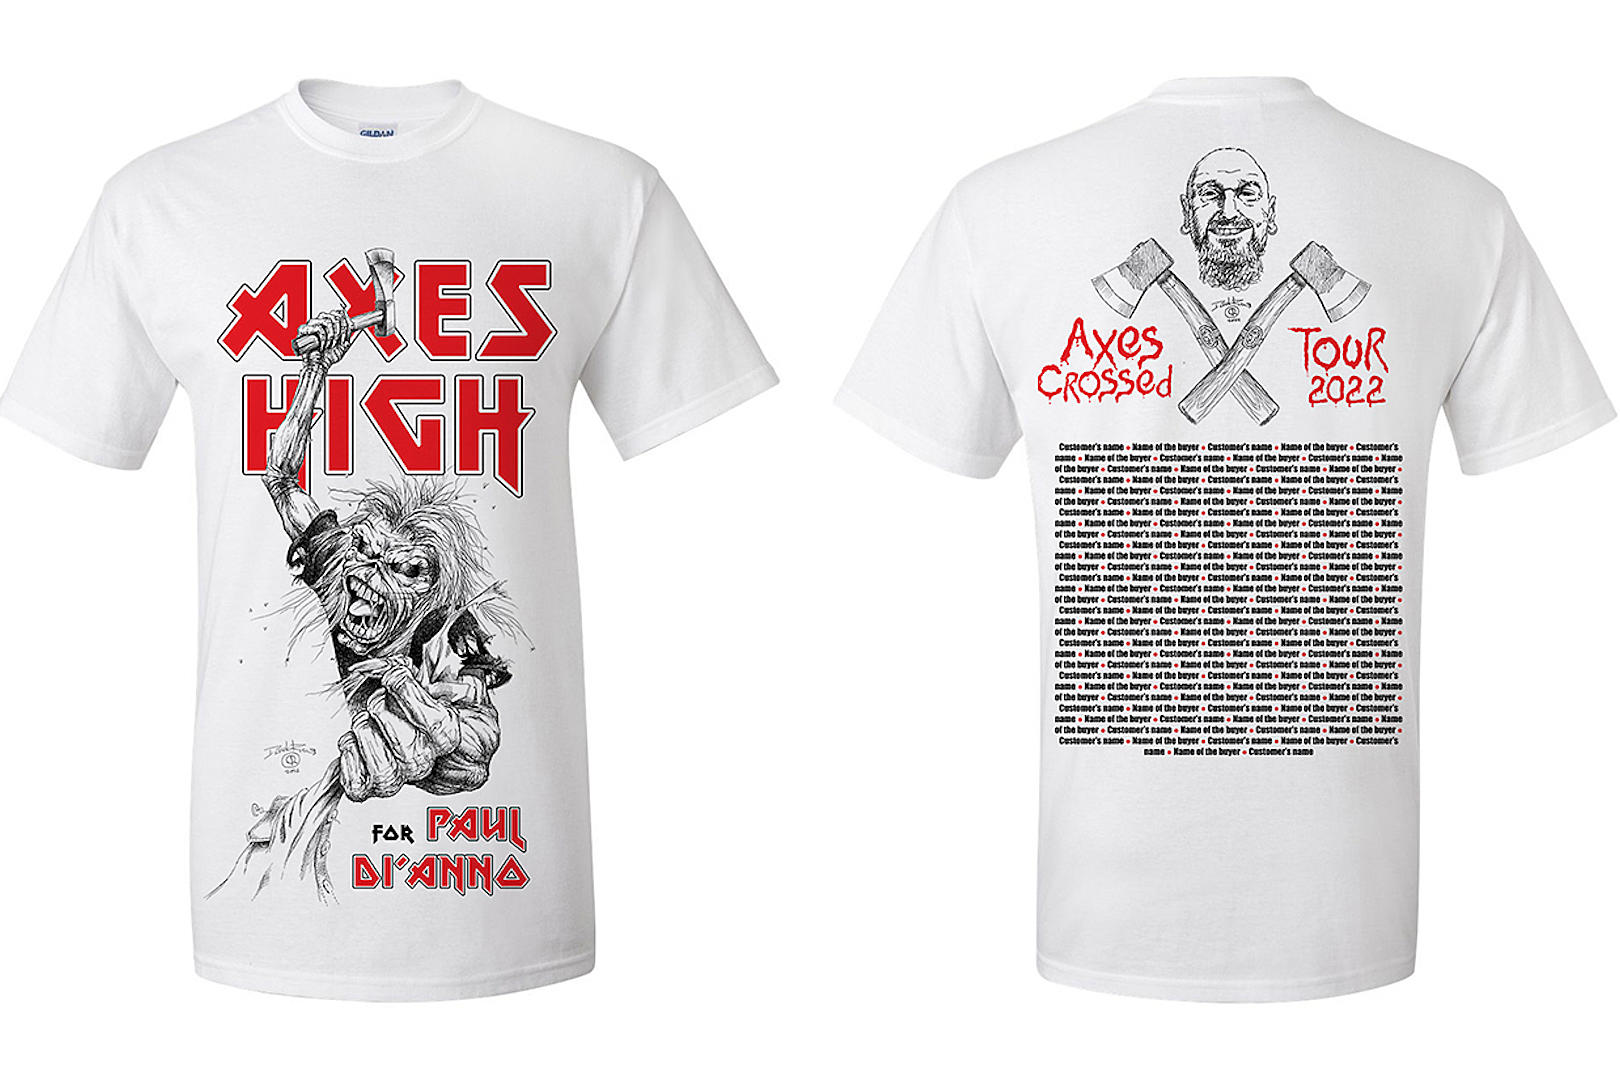 IRON MAIDEN Artist Designs Benefit Shirt pour l'ancien chanteur PAUL DI'ANNO